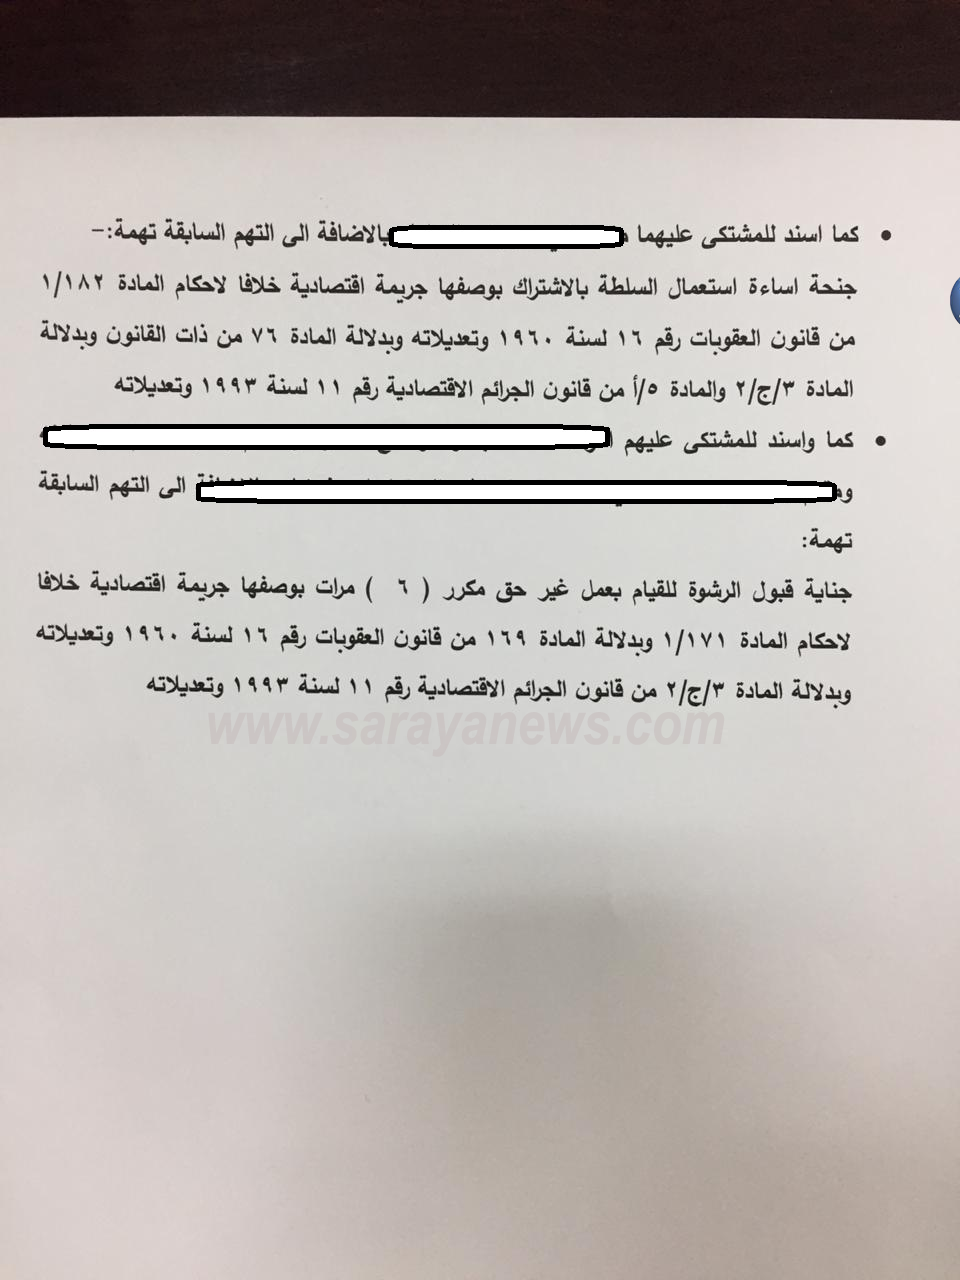  ..  بالوثائق  ..  توقيف مسؤولين كبار بينهم وزير سابق في "قضية الدخان" 